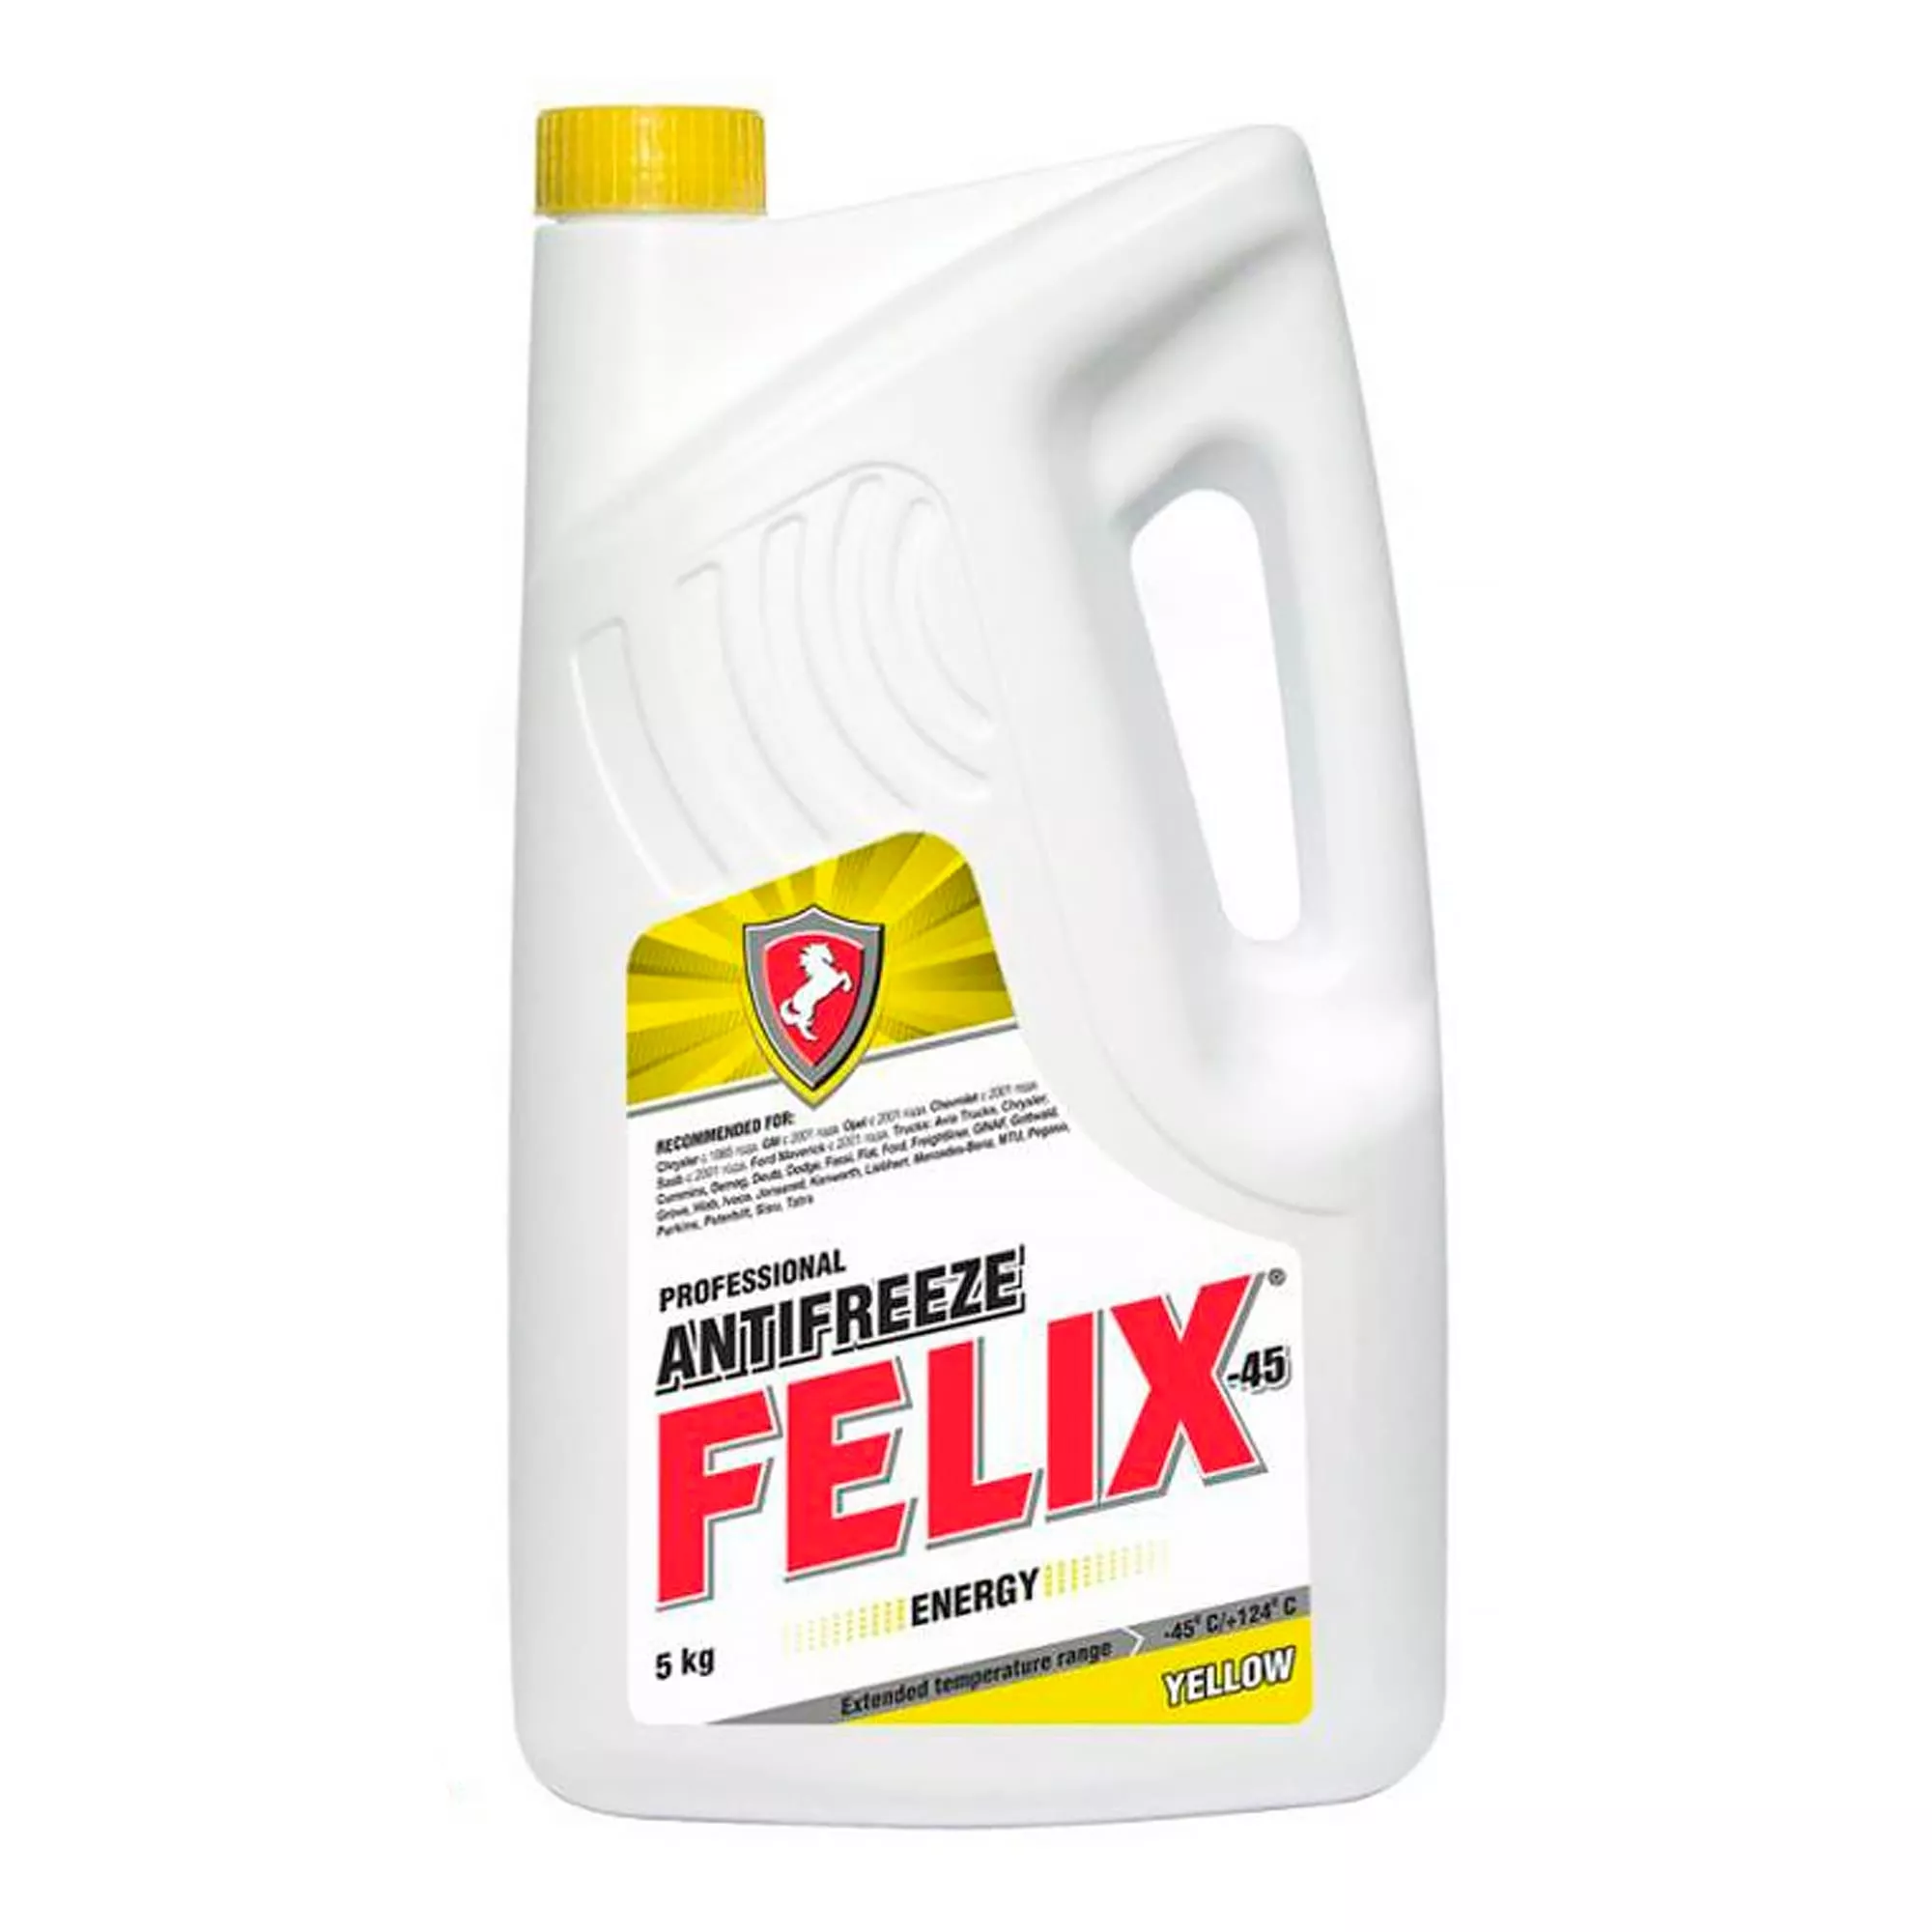  Felix Energy G12 -45°C желтый 5л -  по доступной цене .